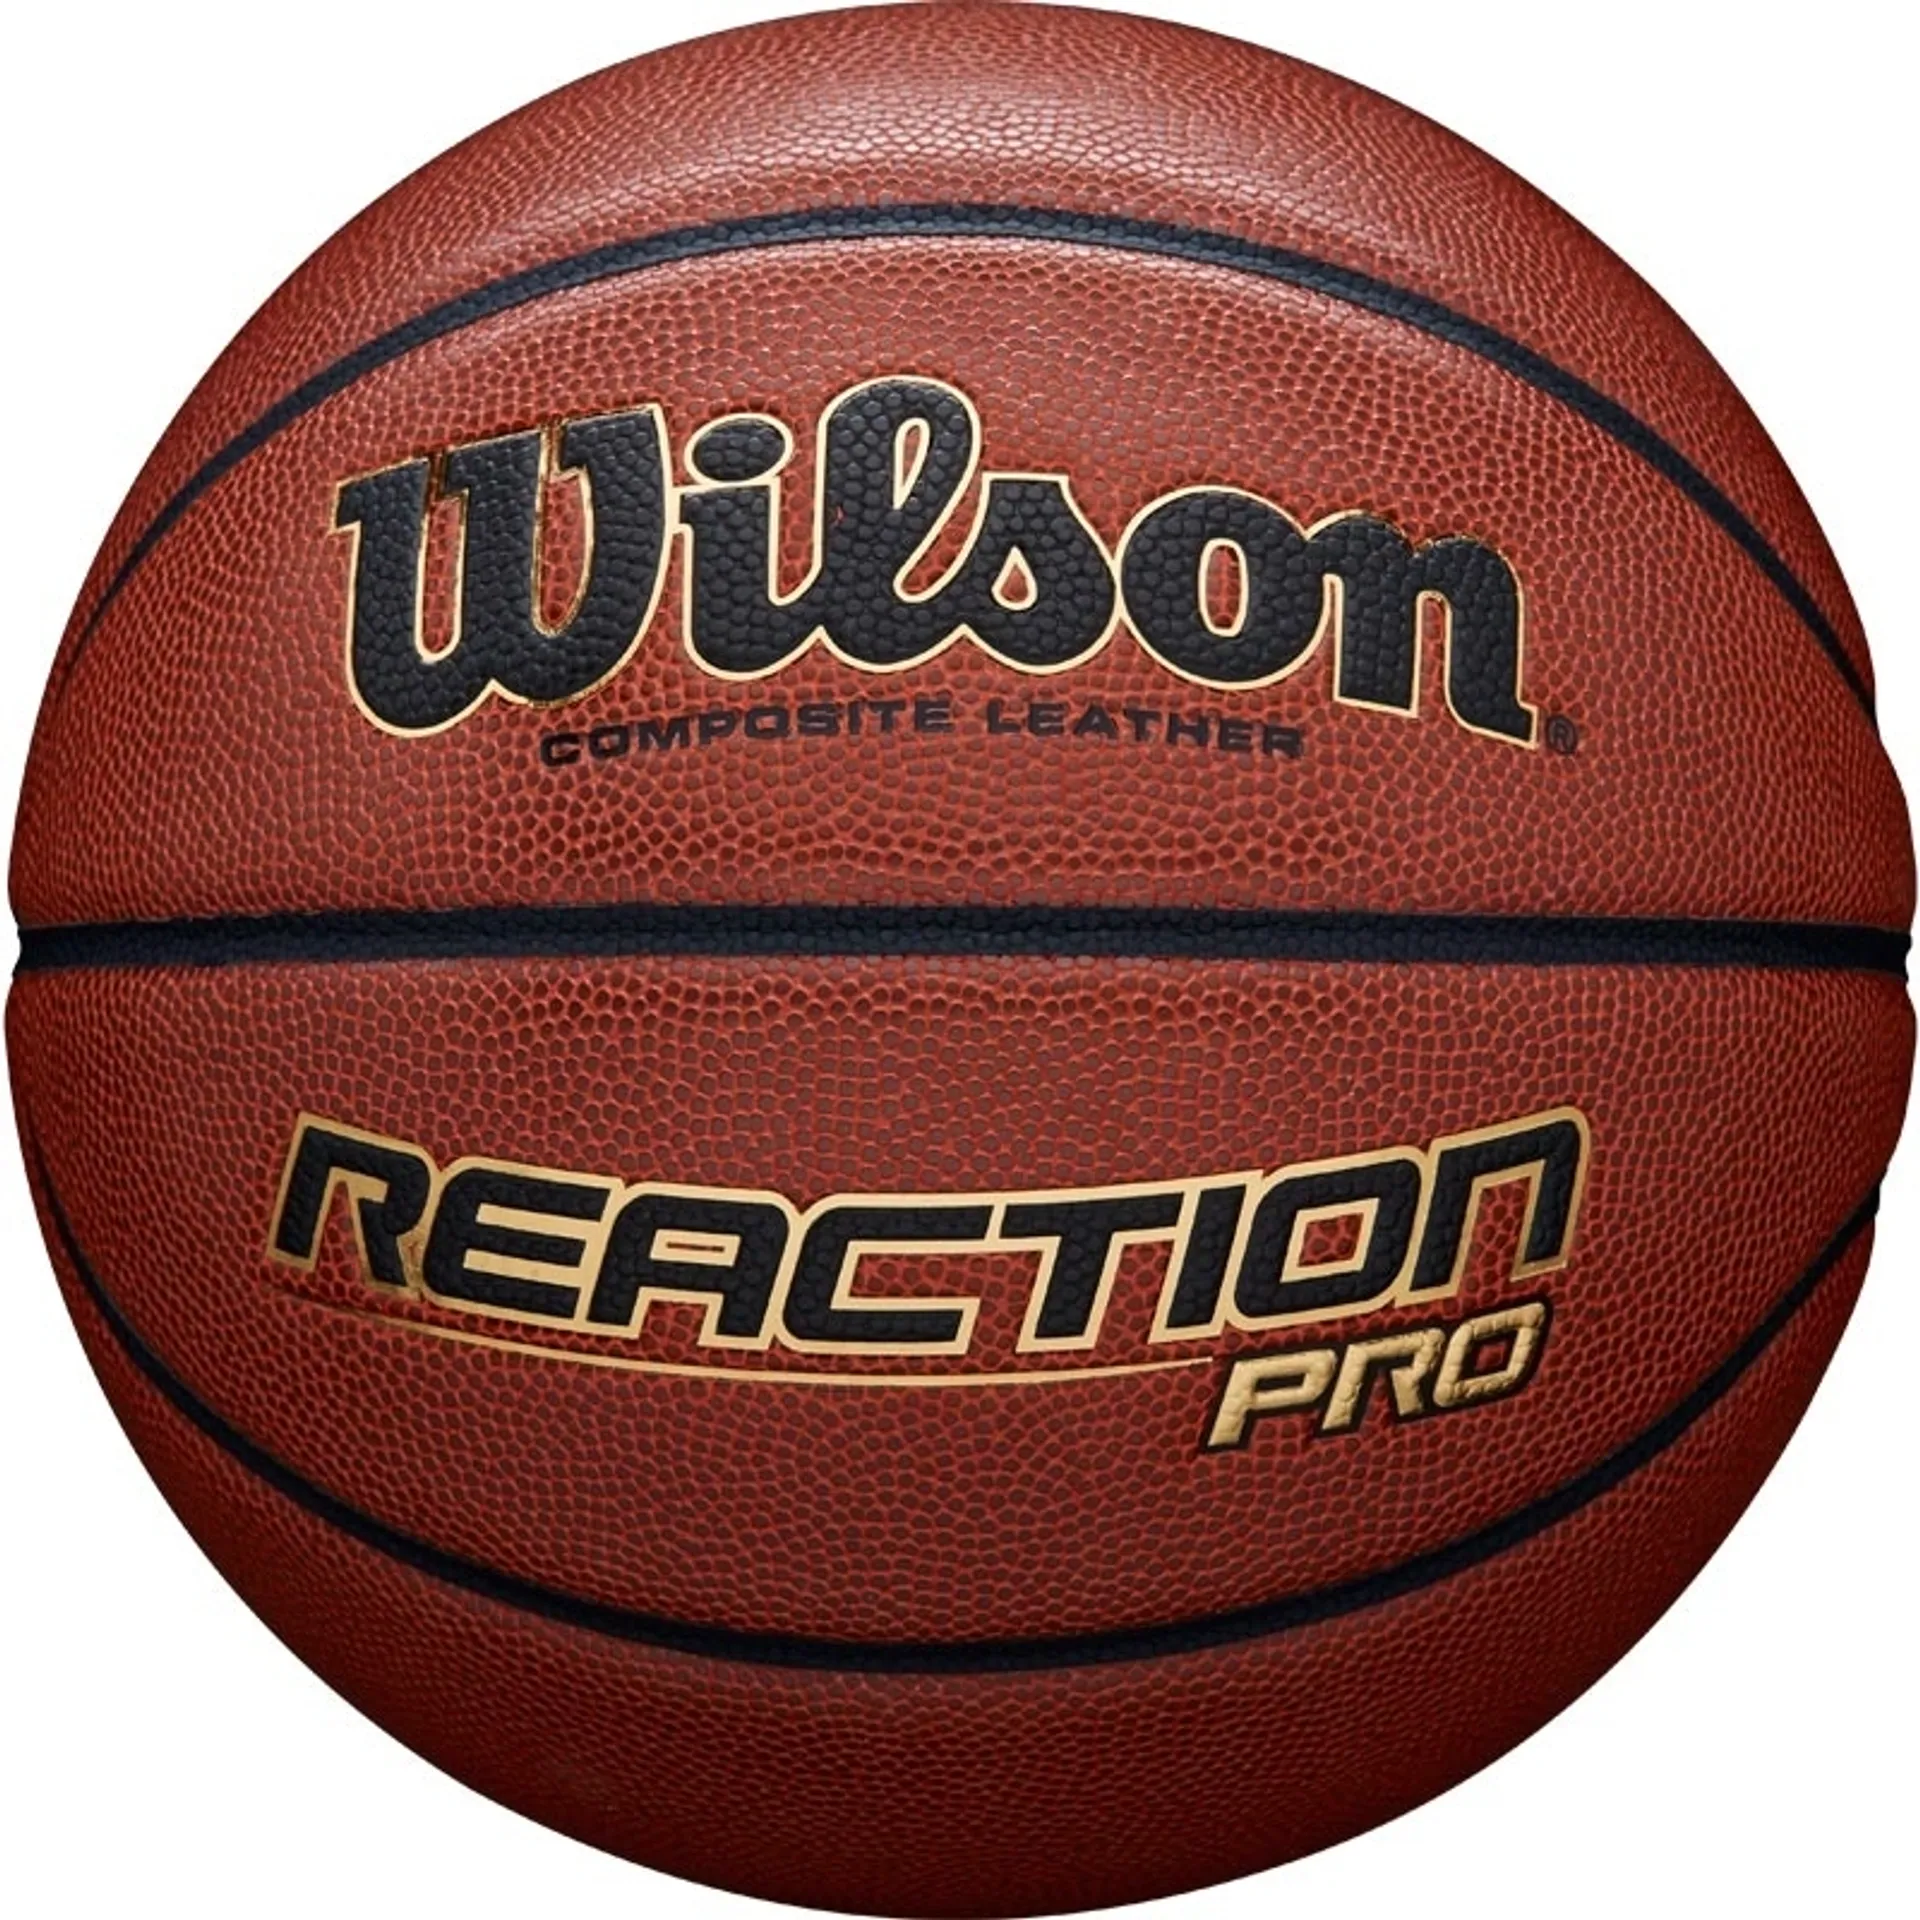 Wilson koripallo Reaction Pro koko 7